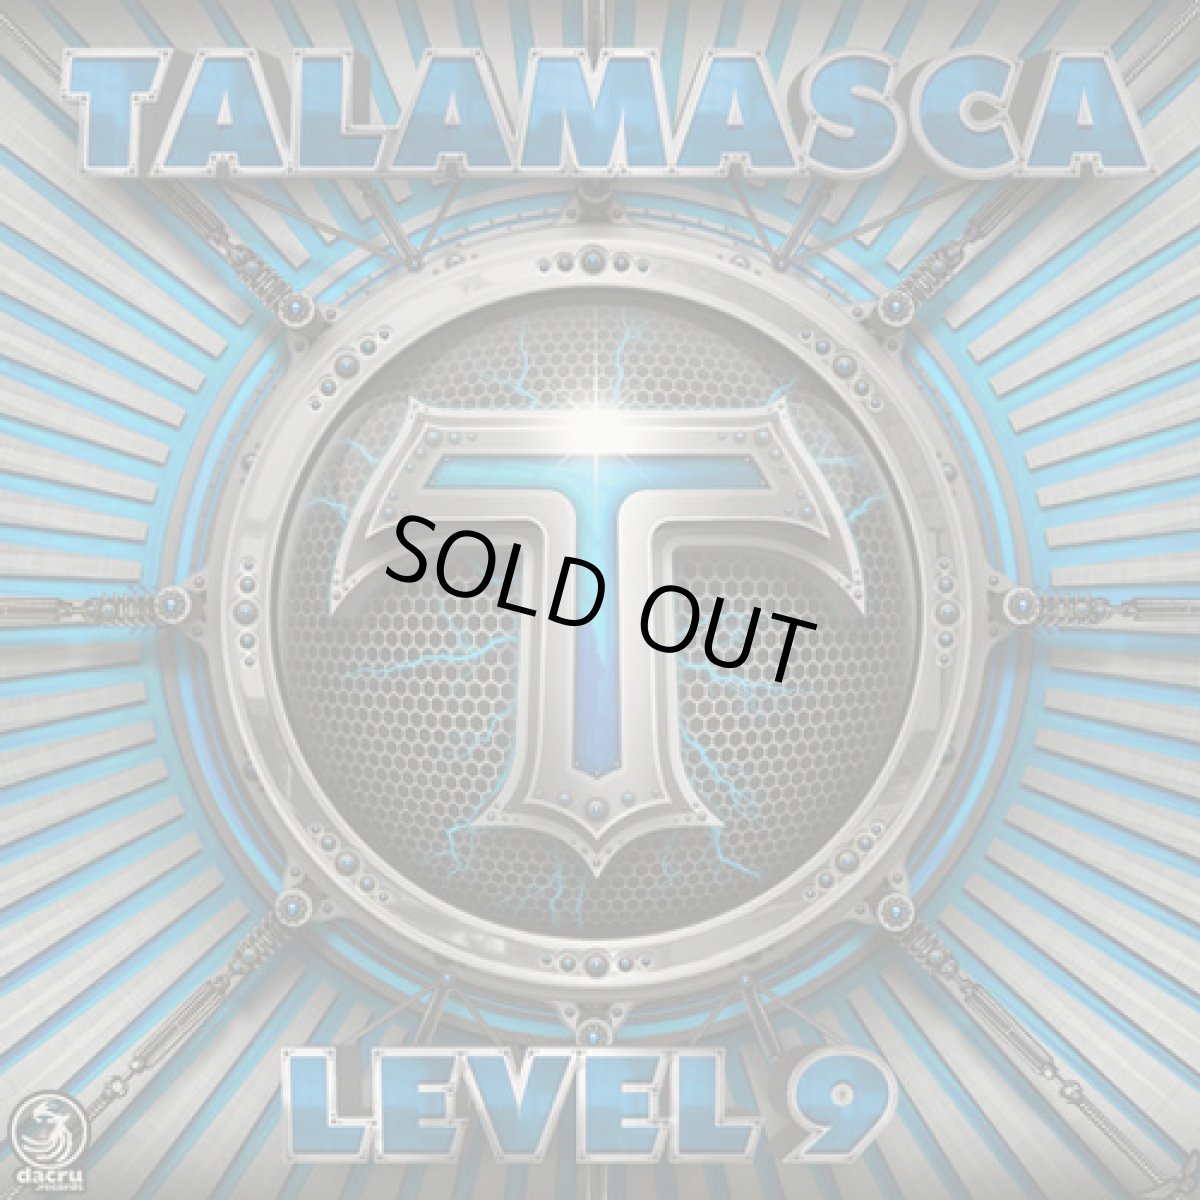 画像1: CD「TALAMASCA  / Level 9」【フルオン・PSYトランス】 (1)